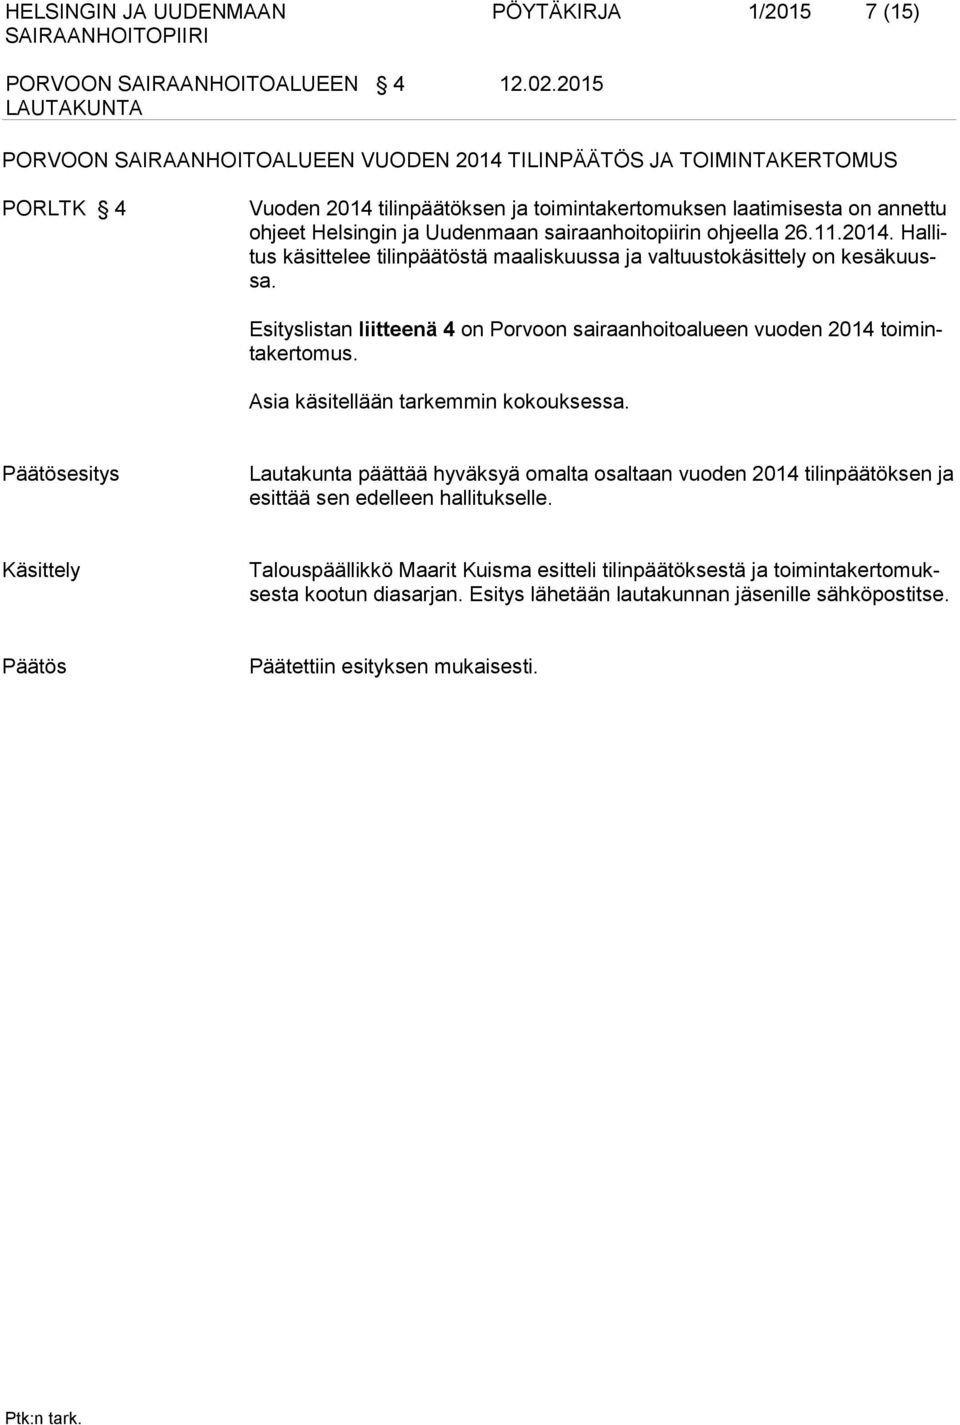 11.2014. Hallitus käsittelee tilinpäätöstä maaliskuussa ja valtuustokäsittely on kesäkuussa. Esityslistan liitteenä 4 on Porvoon sairaanhoitoalueen vuoden 2014 toimintakertomus.